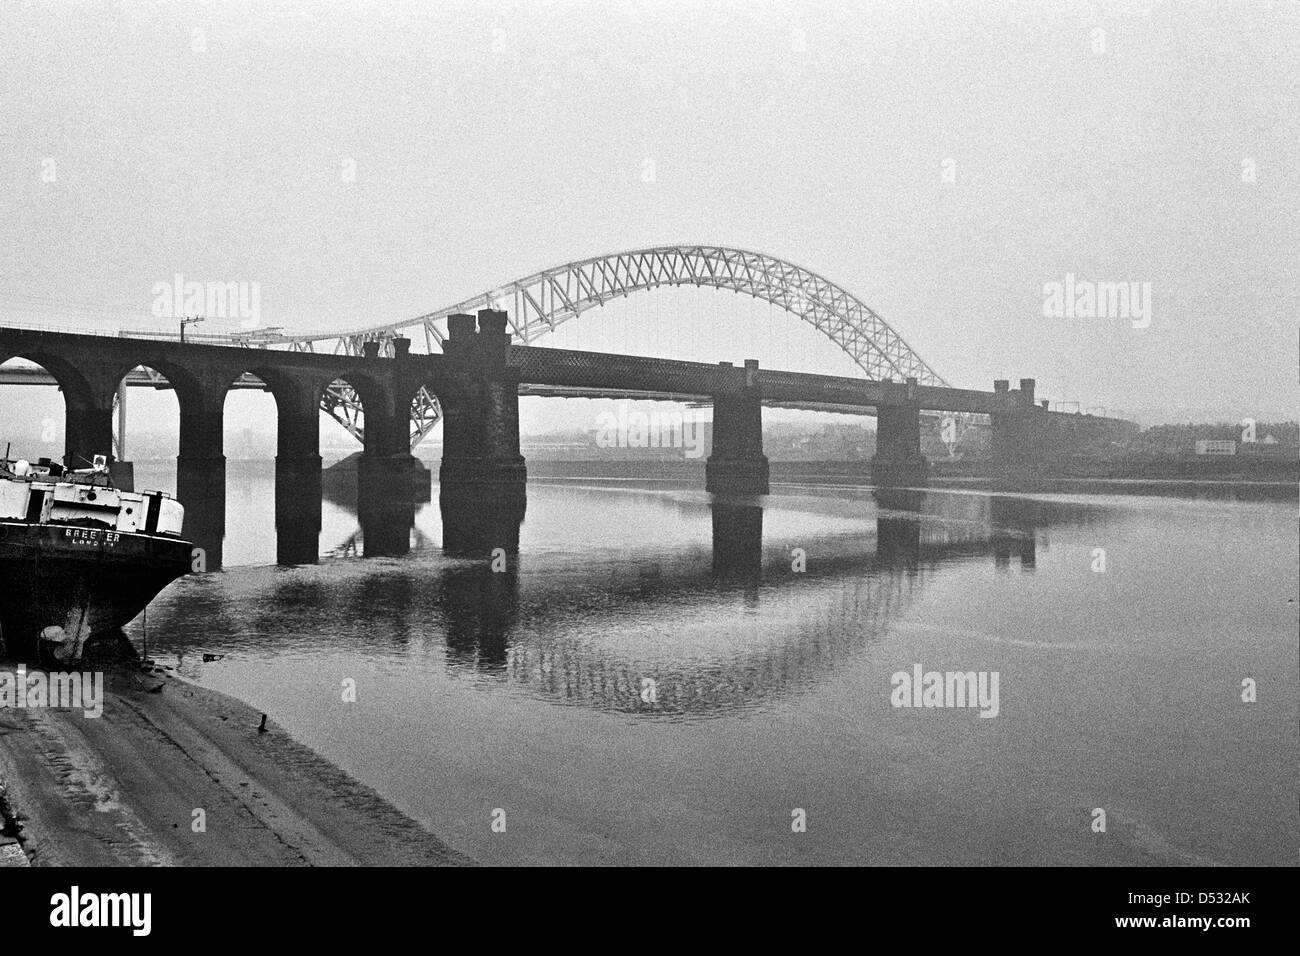 Runcorn-Widnes Bridge renamed The Silver Jubilee Bridge in 1977 Stock Photo